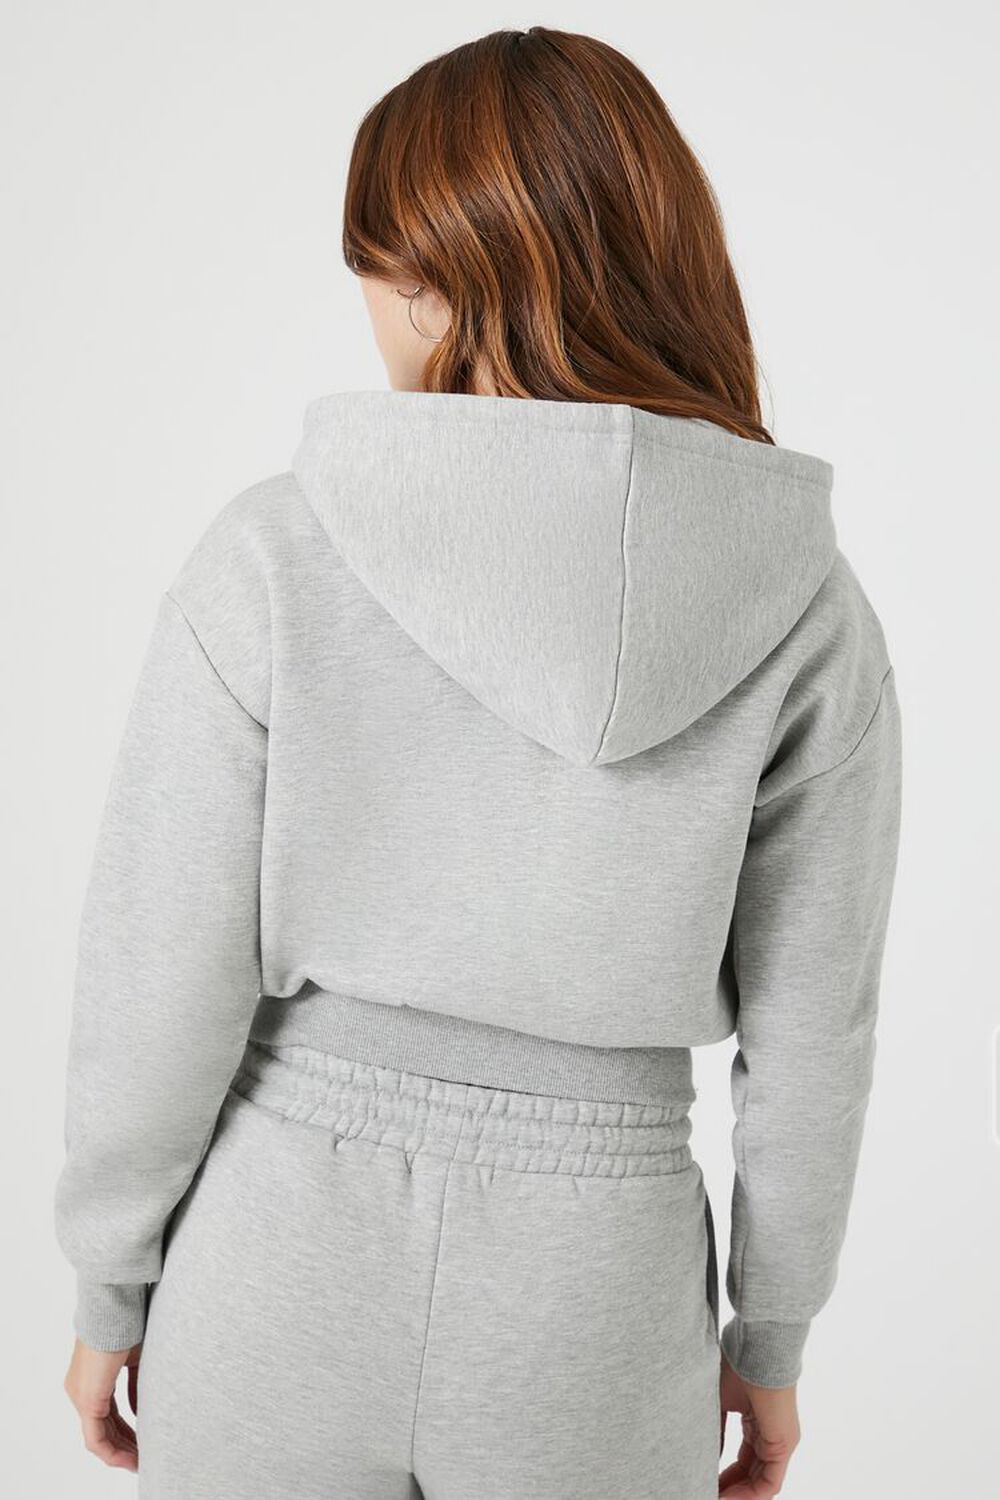 HEATHER GREY Basic Fleece Zip-Up Hoodie, image 3